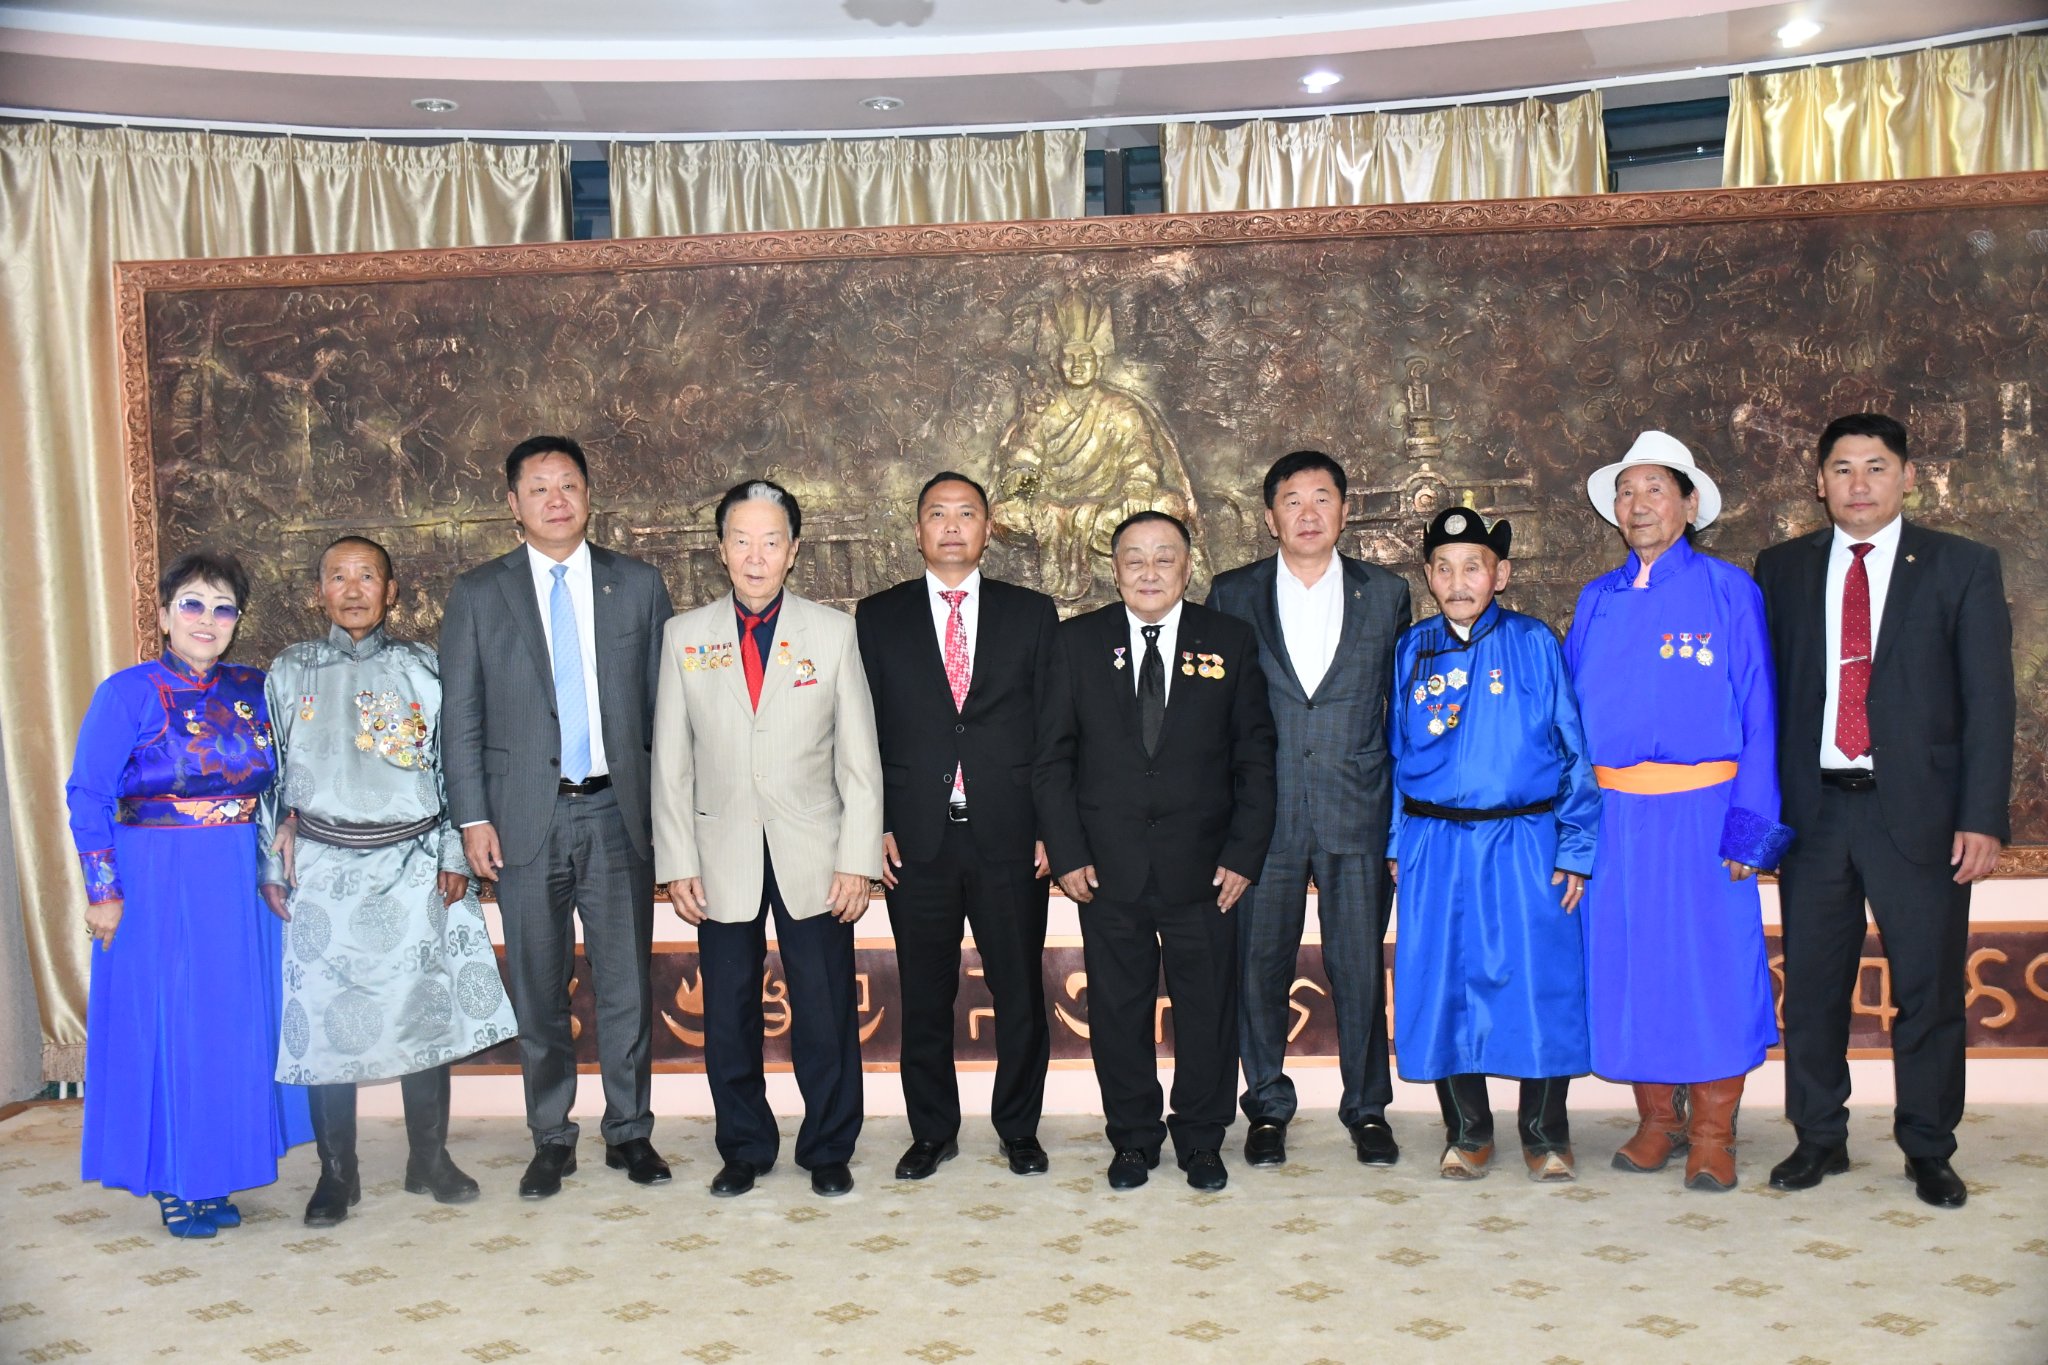 Монгол улсын хөдөлмөрийн баатар, гавьяатуудад хүндэтгэл үзүүллээ